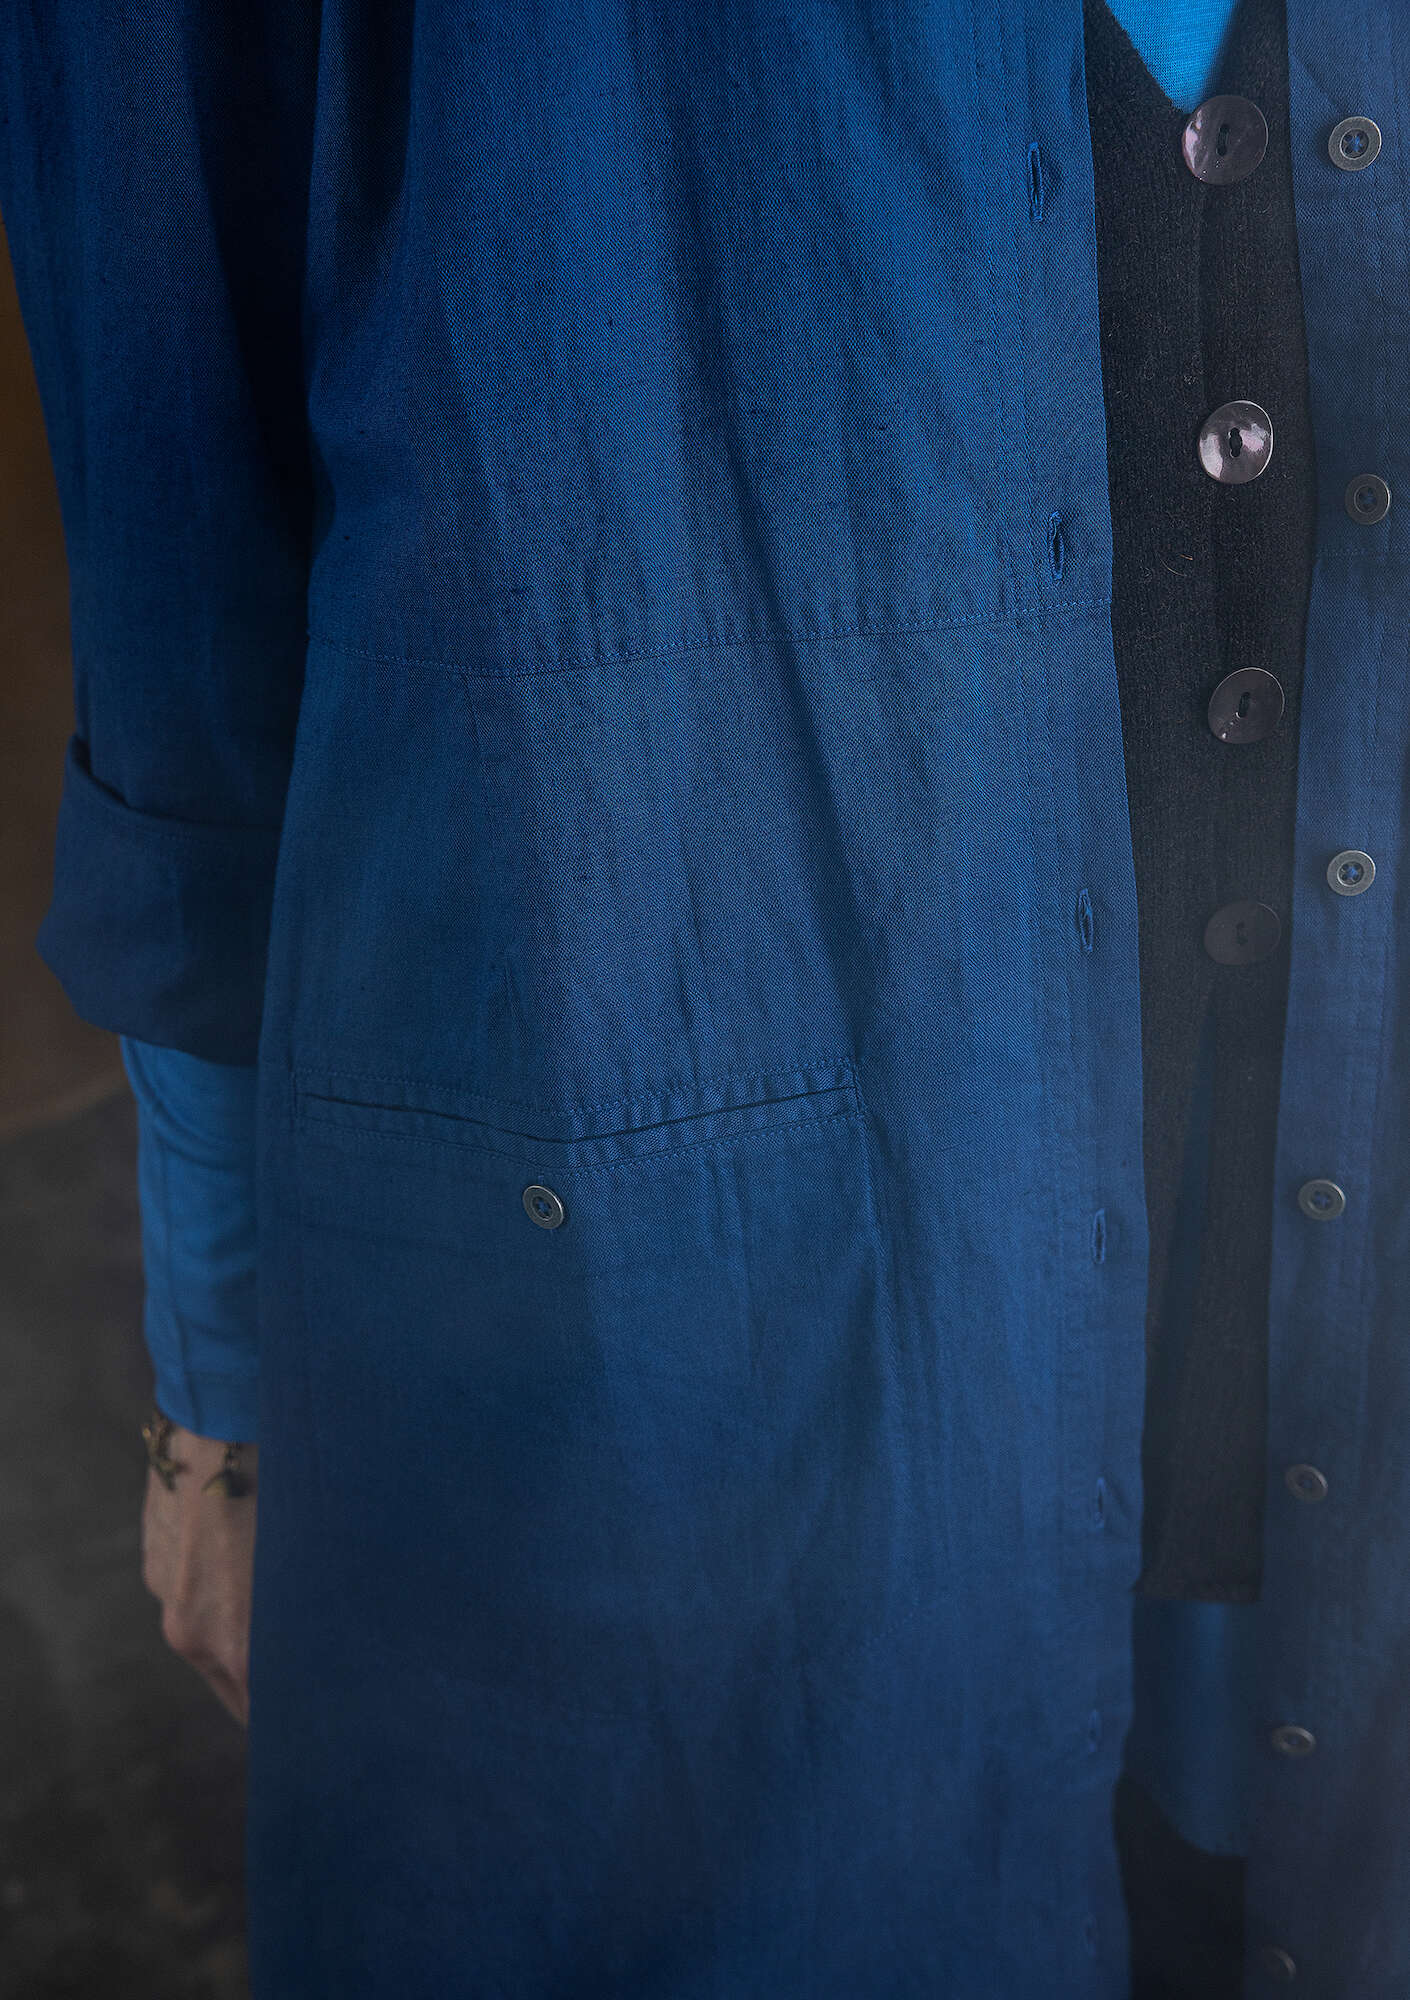 “Earth” dress in woven organic cotton/linen indigo blue